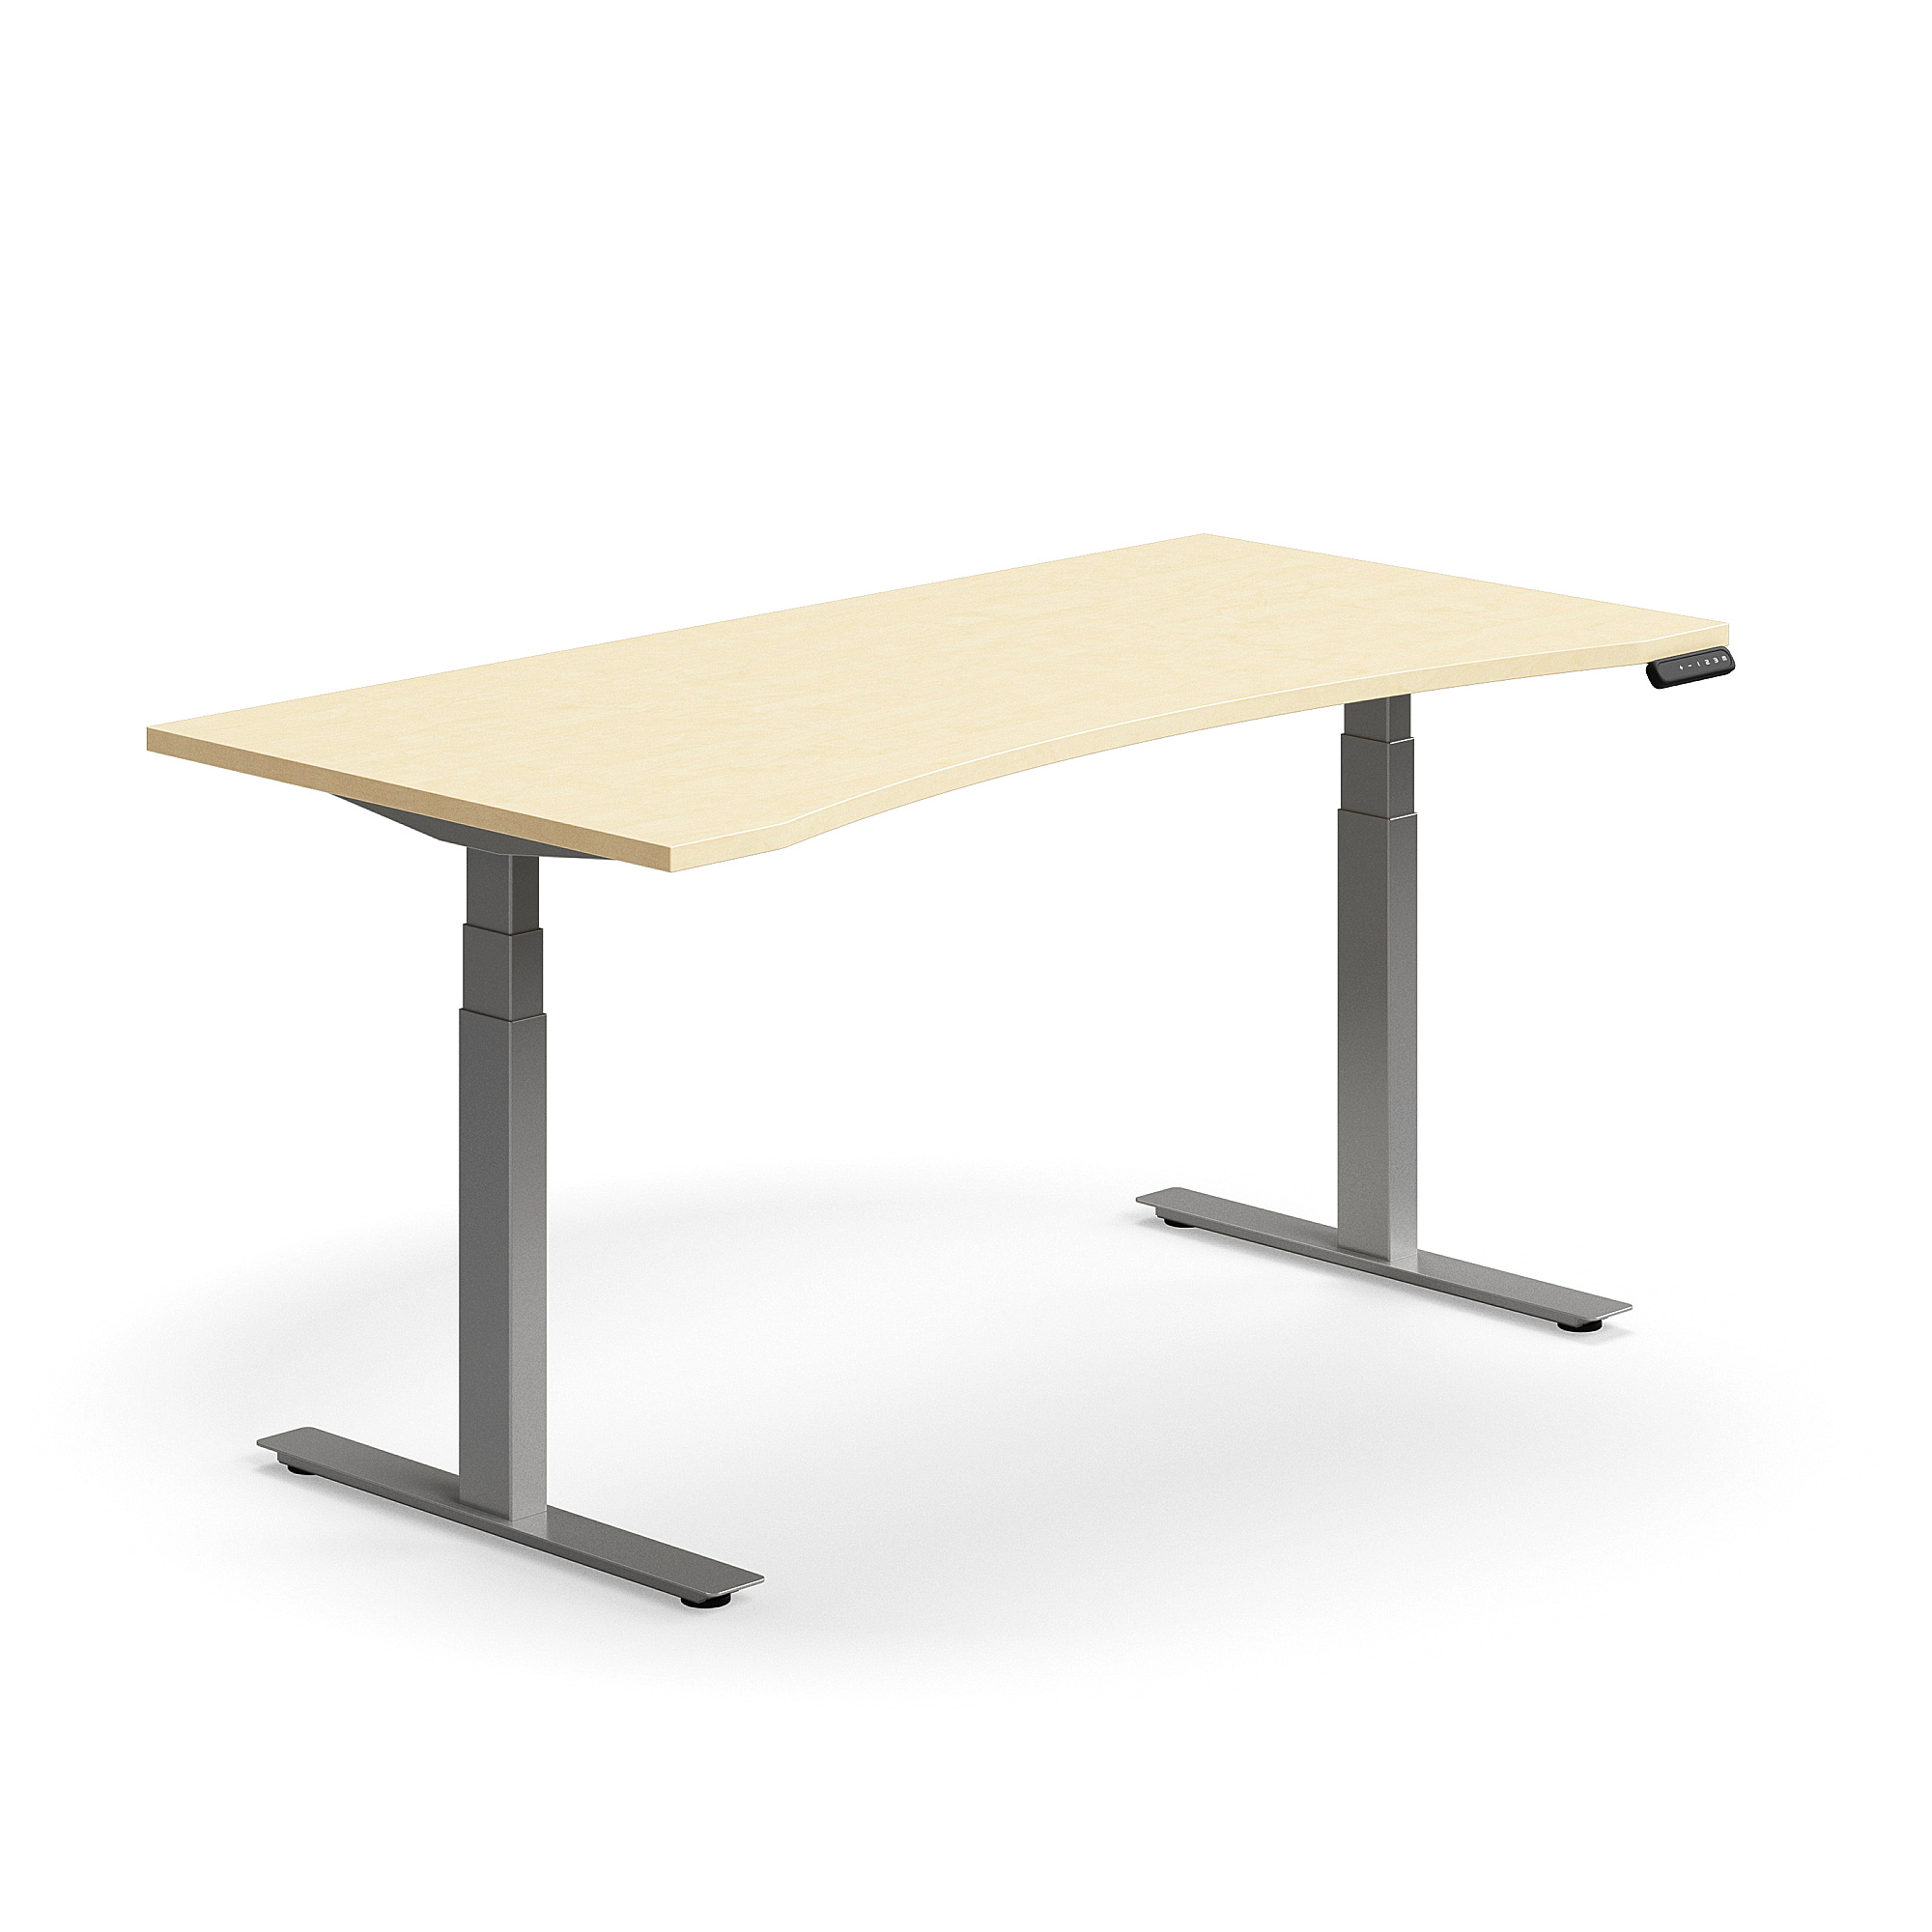 Výškově nastavitelný stůl QBUS, vykrojený, 1600x800 mm, stříbrná podnož, bříza